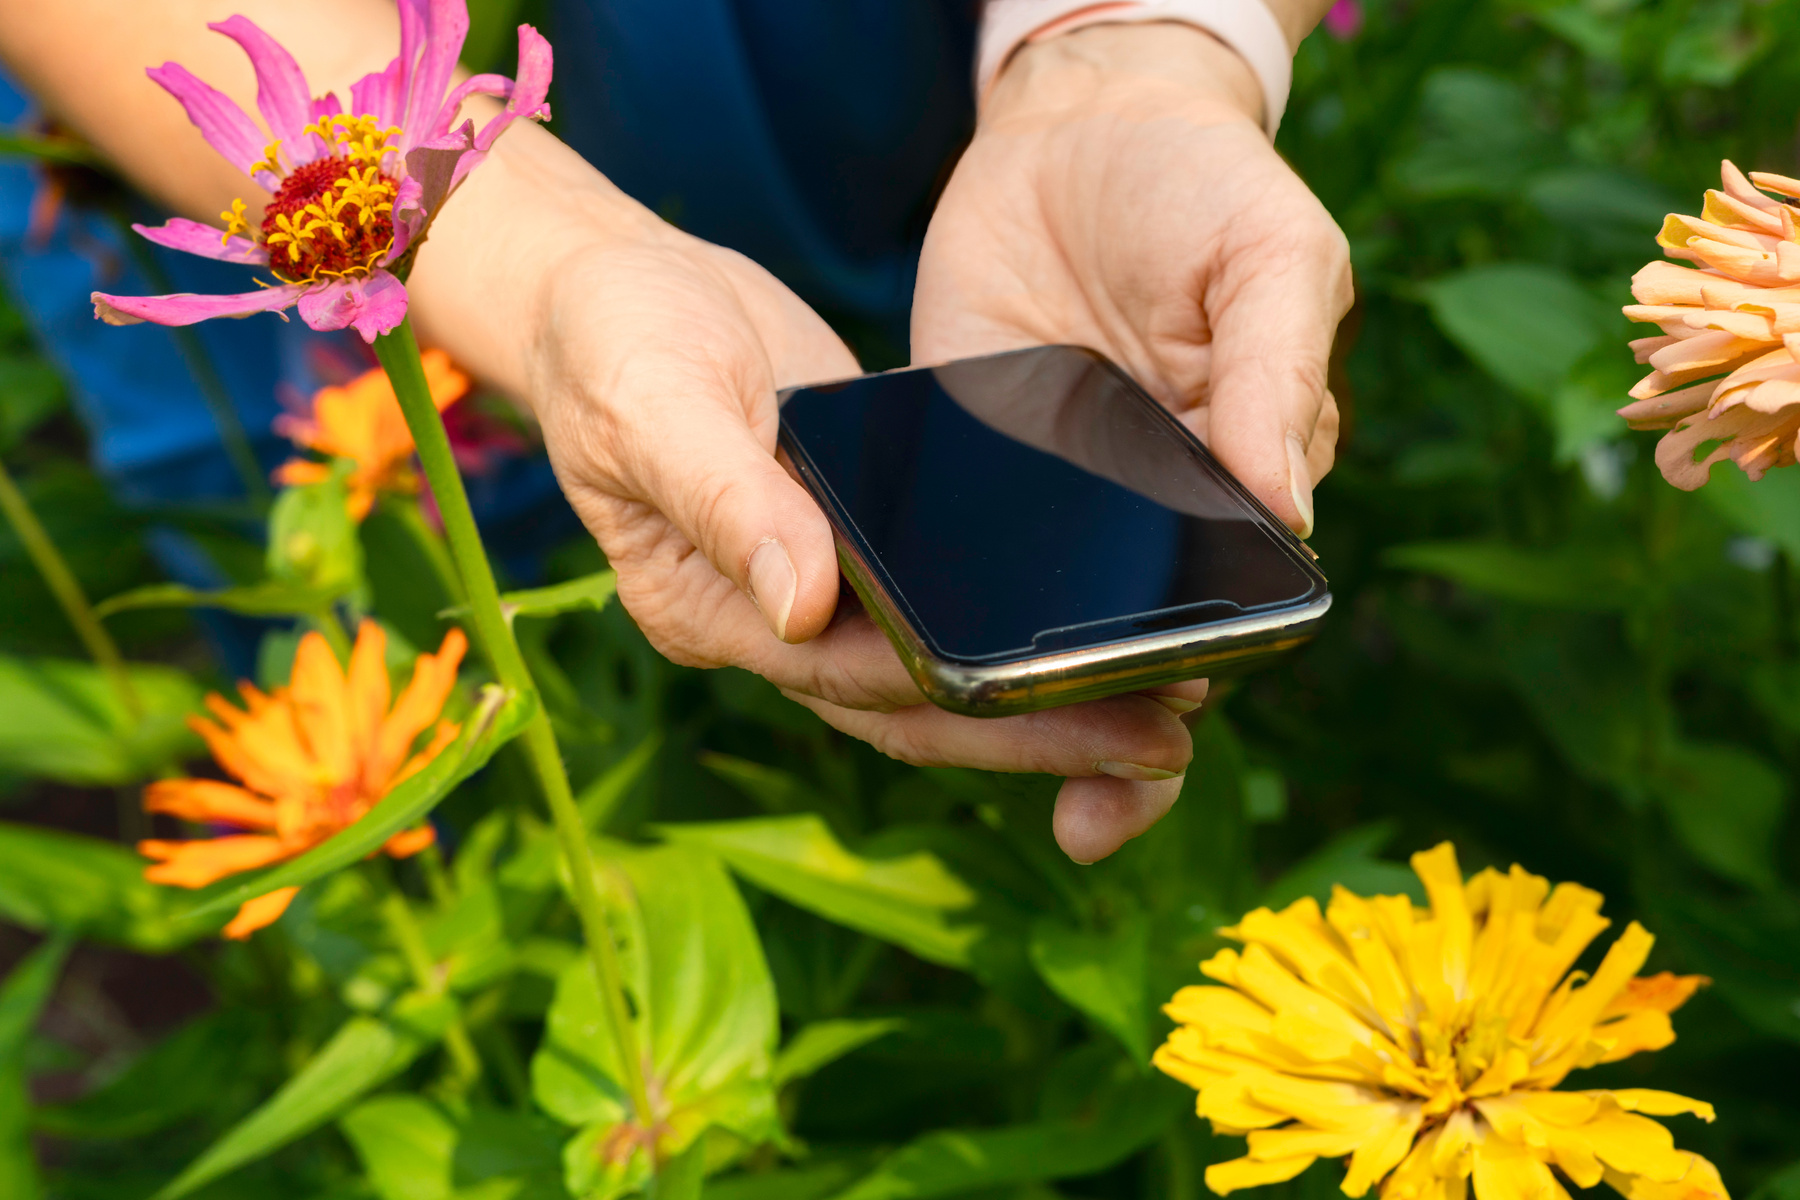 Checking phone while gardening